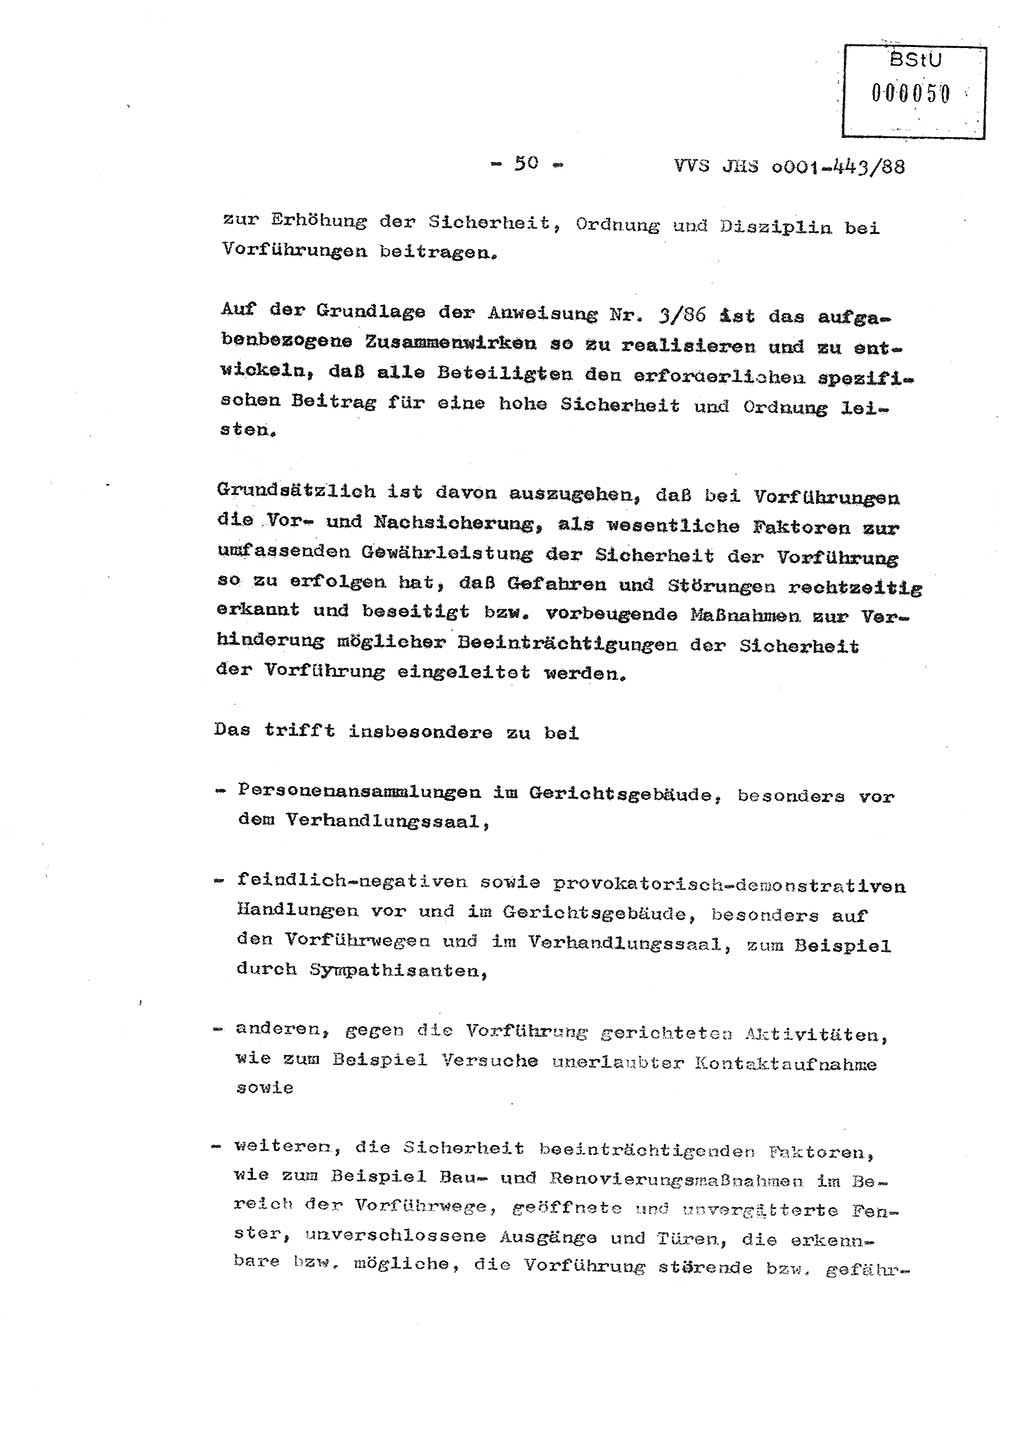 Diplomarbeit Hauptmann Michael Rast (Abt. ⅩⅣ), Major Bernd Rahaus (Abt. ⅩⅣ), Ministerium für Staatssicherheit (MfS) [Deutsche Demokratische Republik (DDR)], Juristische Hochschule (JHS), Vertrauliche Verschlußsache (VVS) o001-443/88, Potsdam 1988, Seite 50 (Dipl.-Arb. MfS DDR JHS VVS o001-443/88 1988, S. 50)